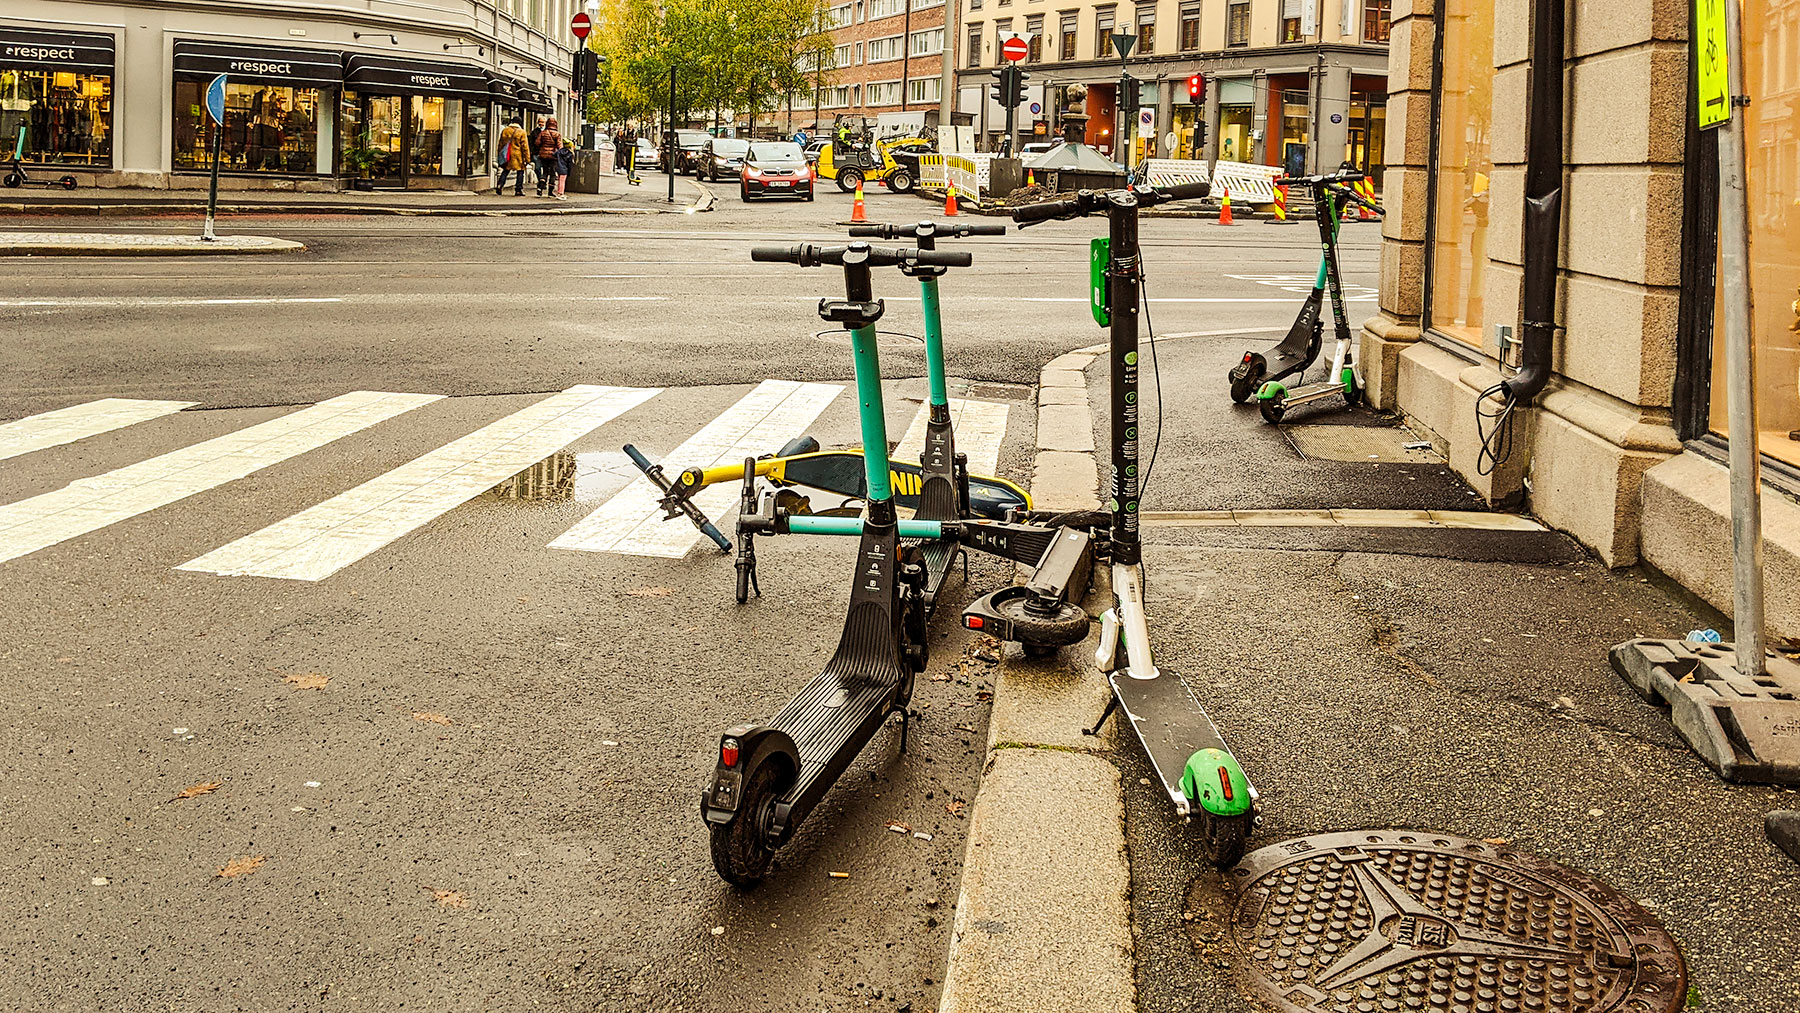 E Scooters blocking sidewalk Majorstuen Oslo October 2020